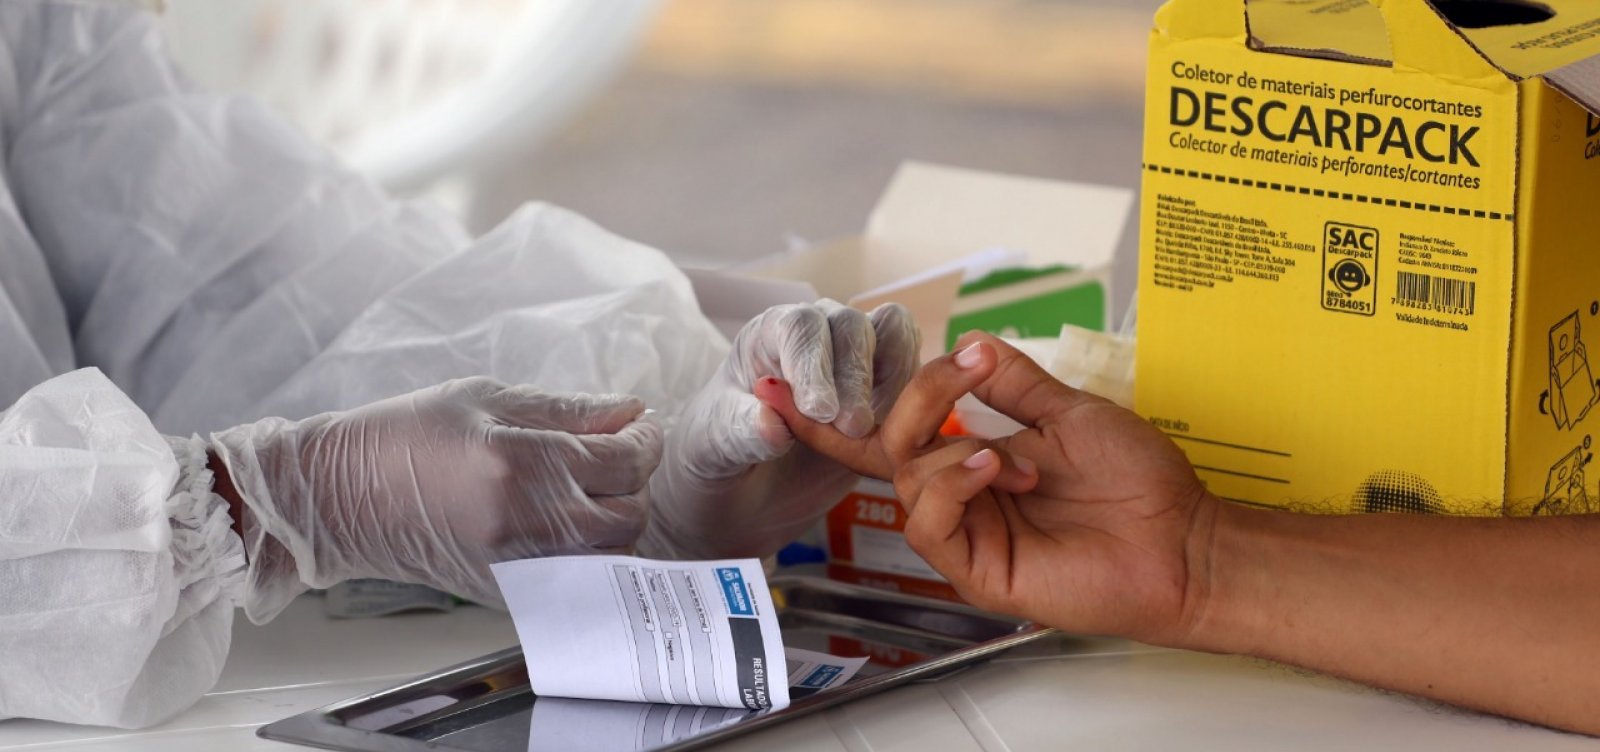 [Testes rápidos identificam 202 casos de coronavírus em seis bairros de Salvador]